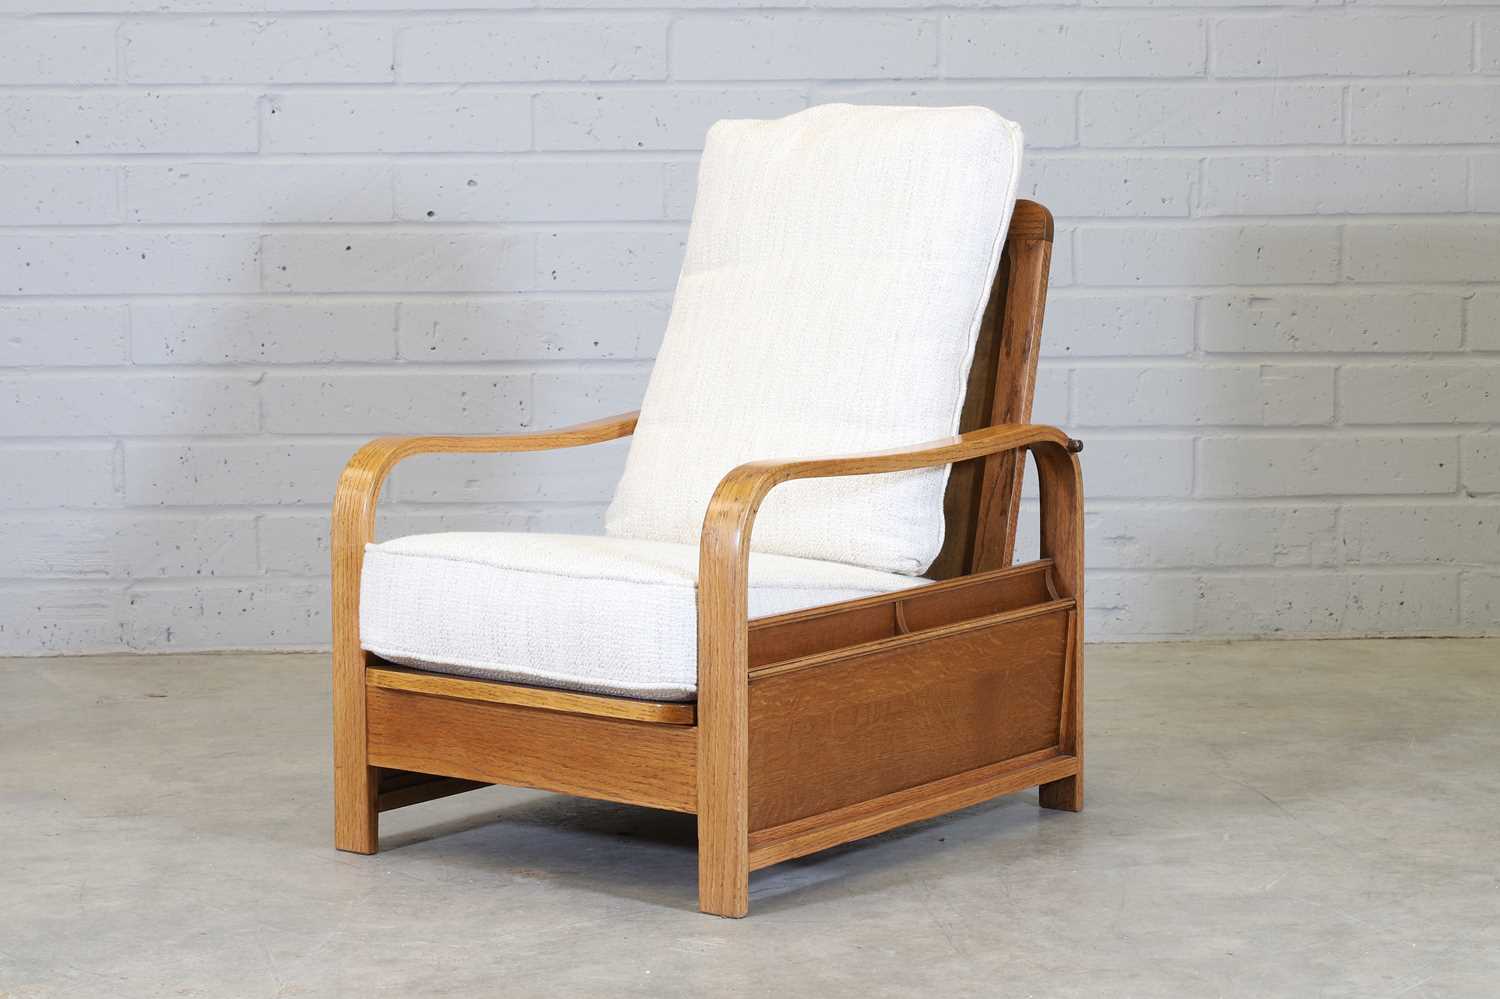 An oak reclining reading chair,